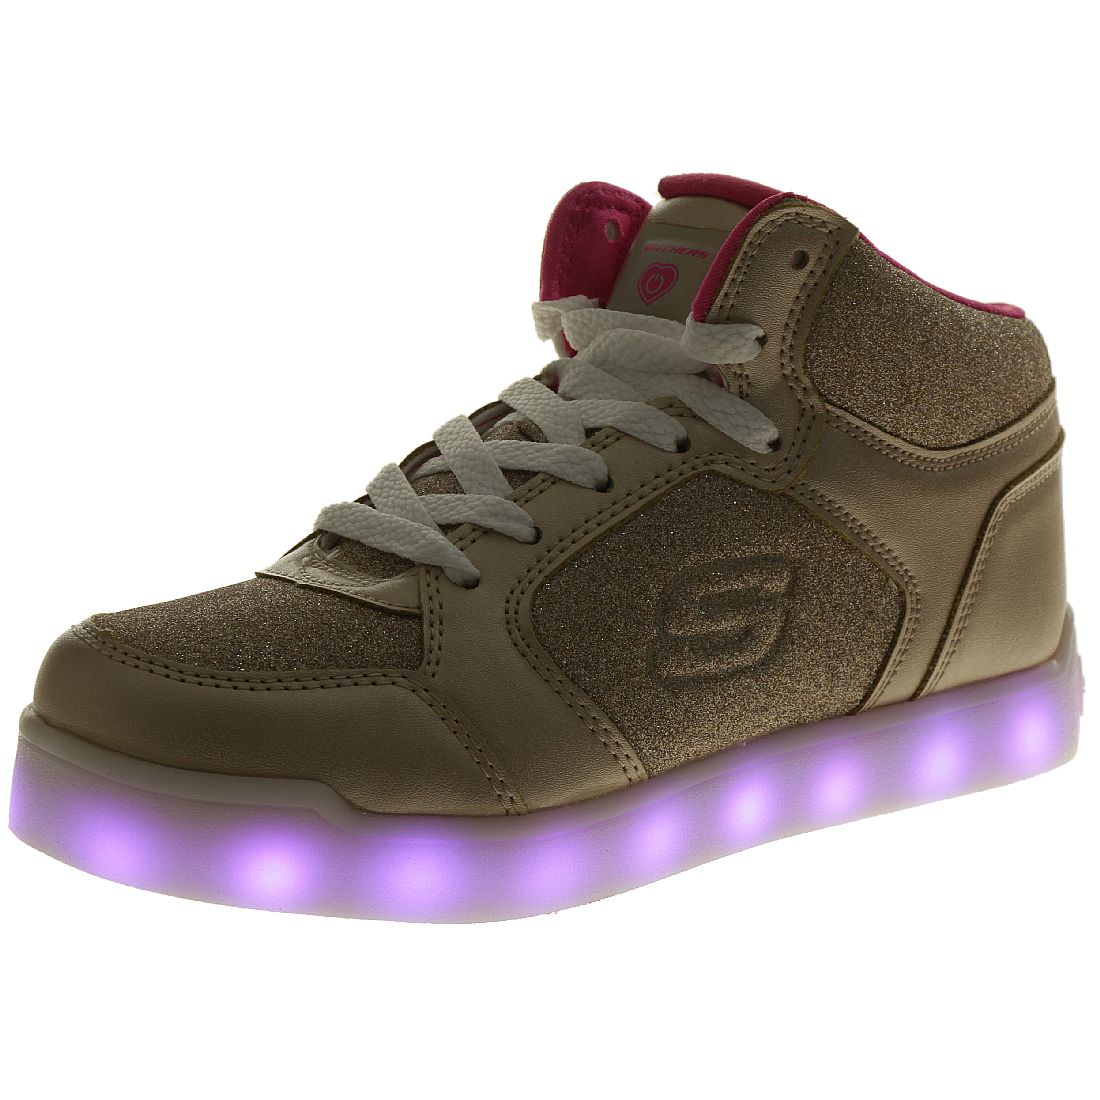 Skechers S Lights E Pro II GLITTER GLOW II Sneaker Schuhe Damen Mädchen Glitzer LED 